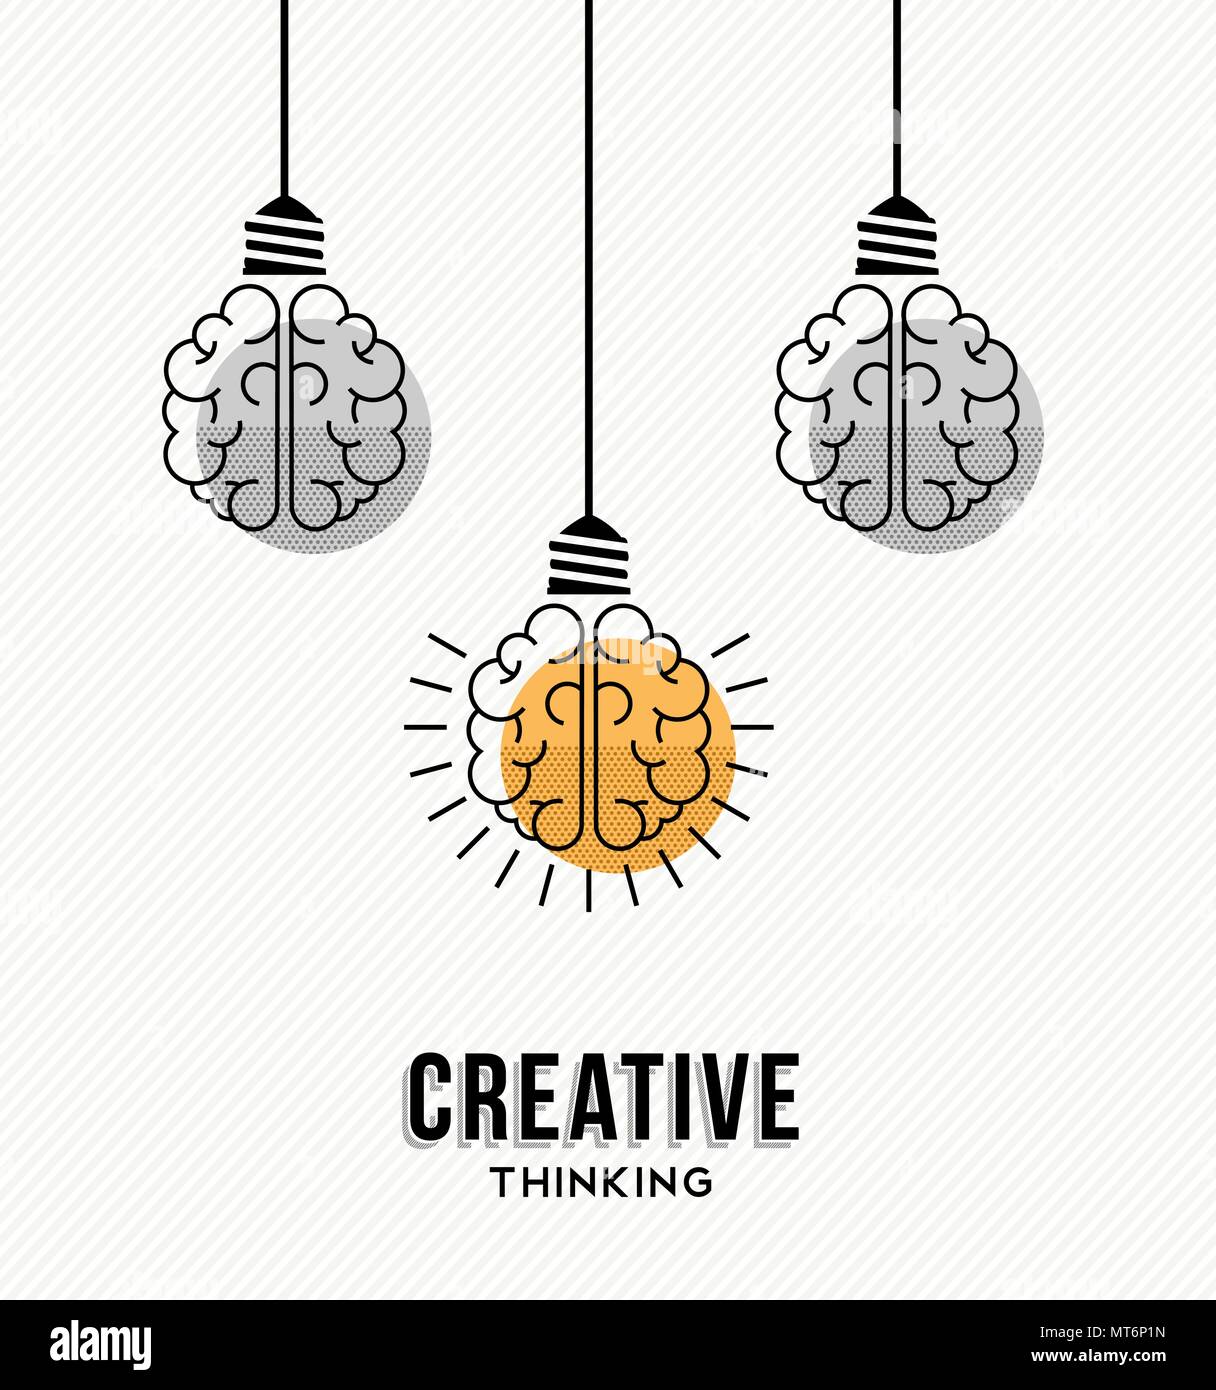 Il pensiero creativo il design moderno con il cervello umano come colorata luce lampada, la creatività imprenditoriale concetto. EPS10 vettore. Illustrazione Vettoriale